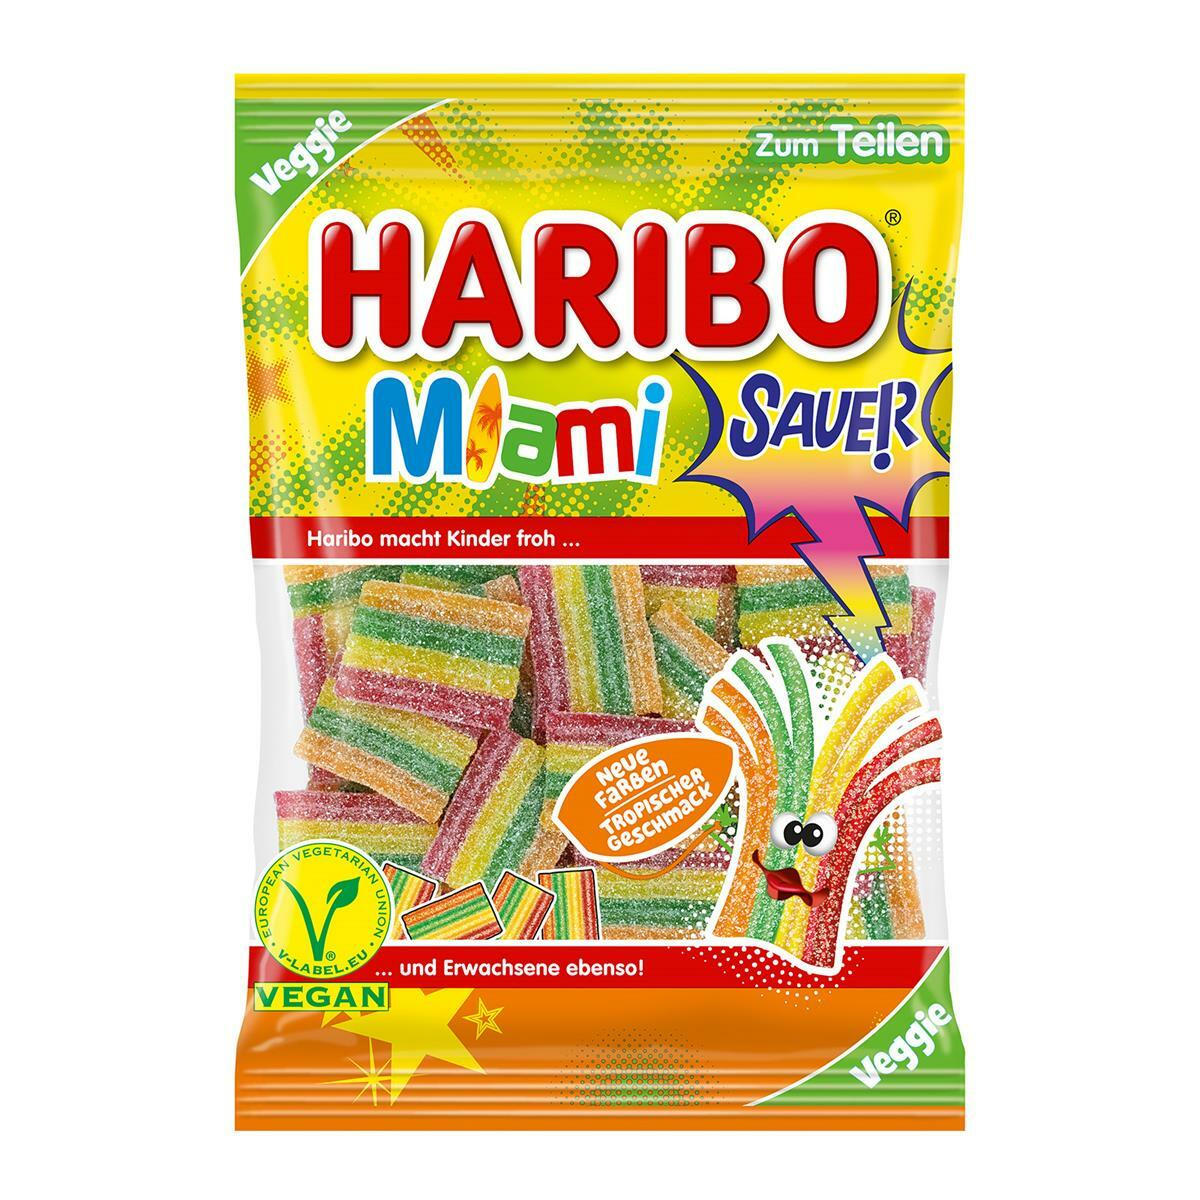 HARIBO Dragibus  Haribo, Cute snacks, Haribo sweets